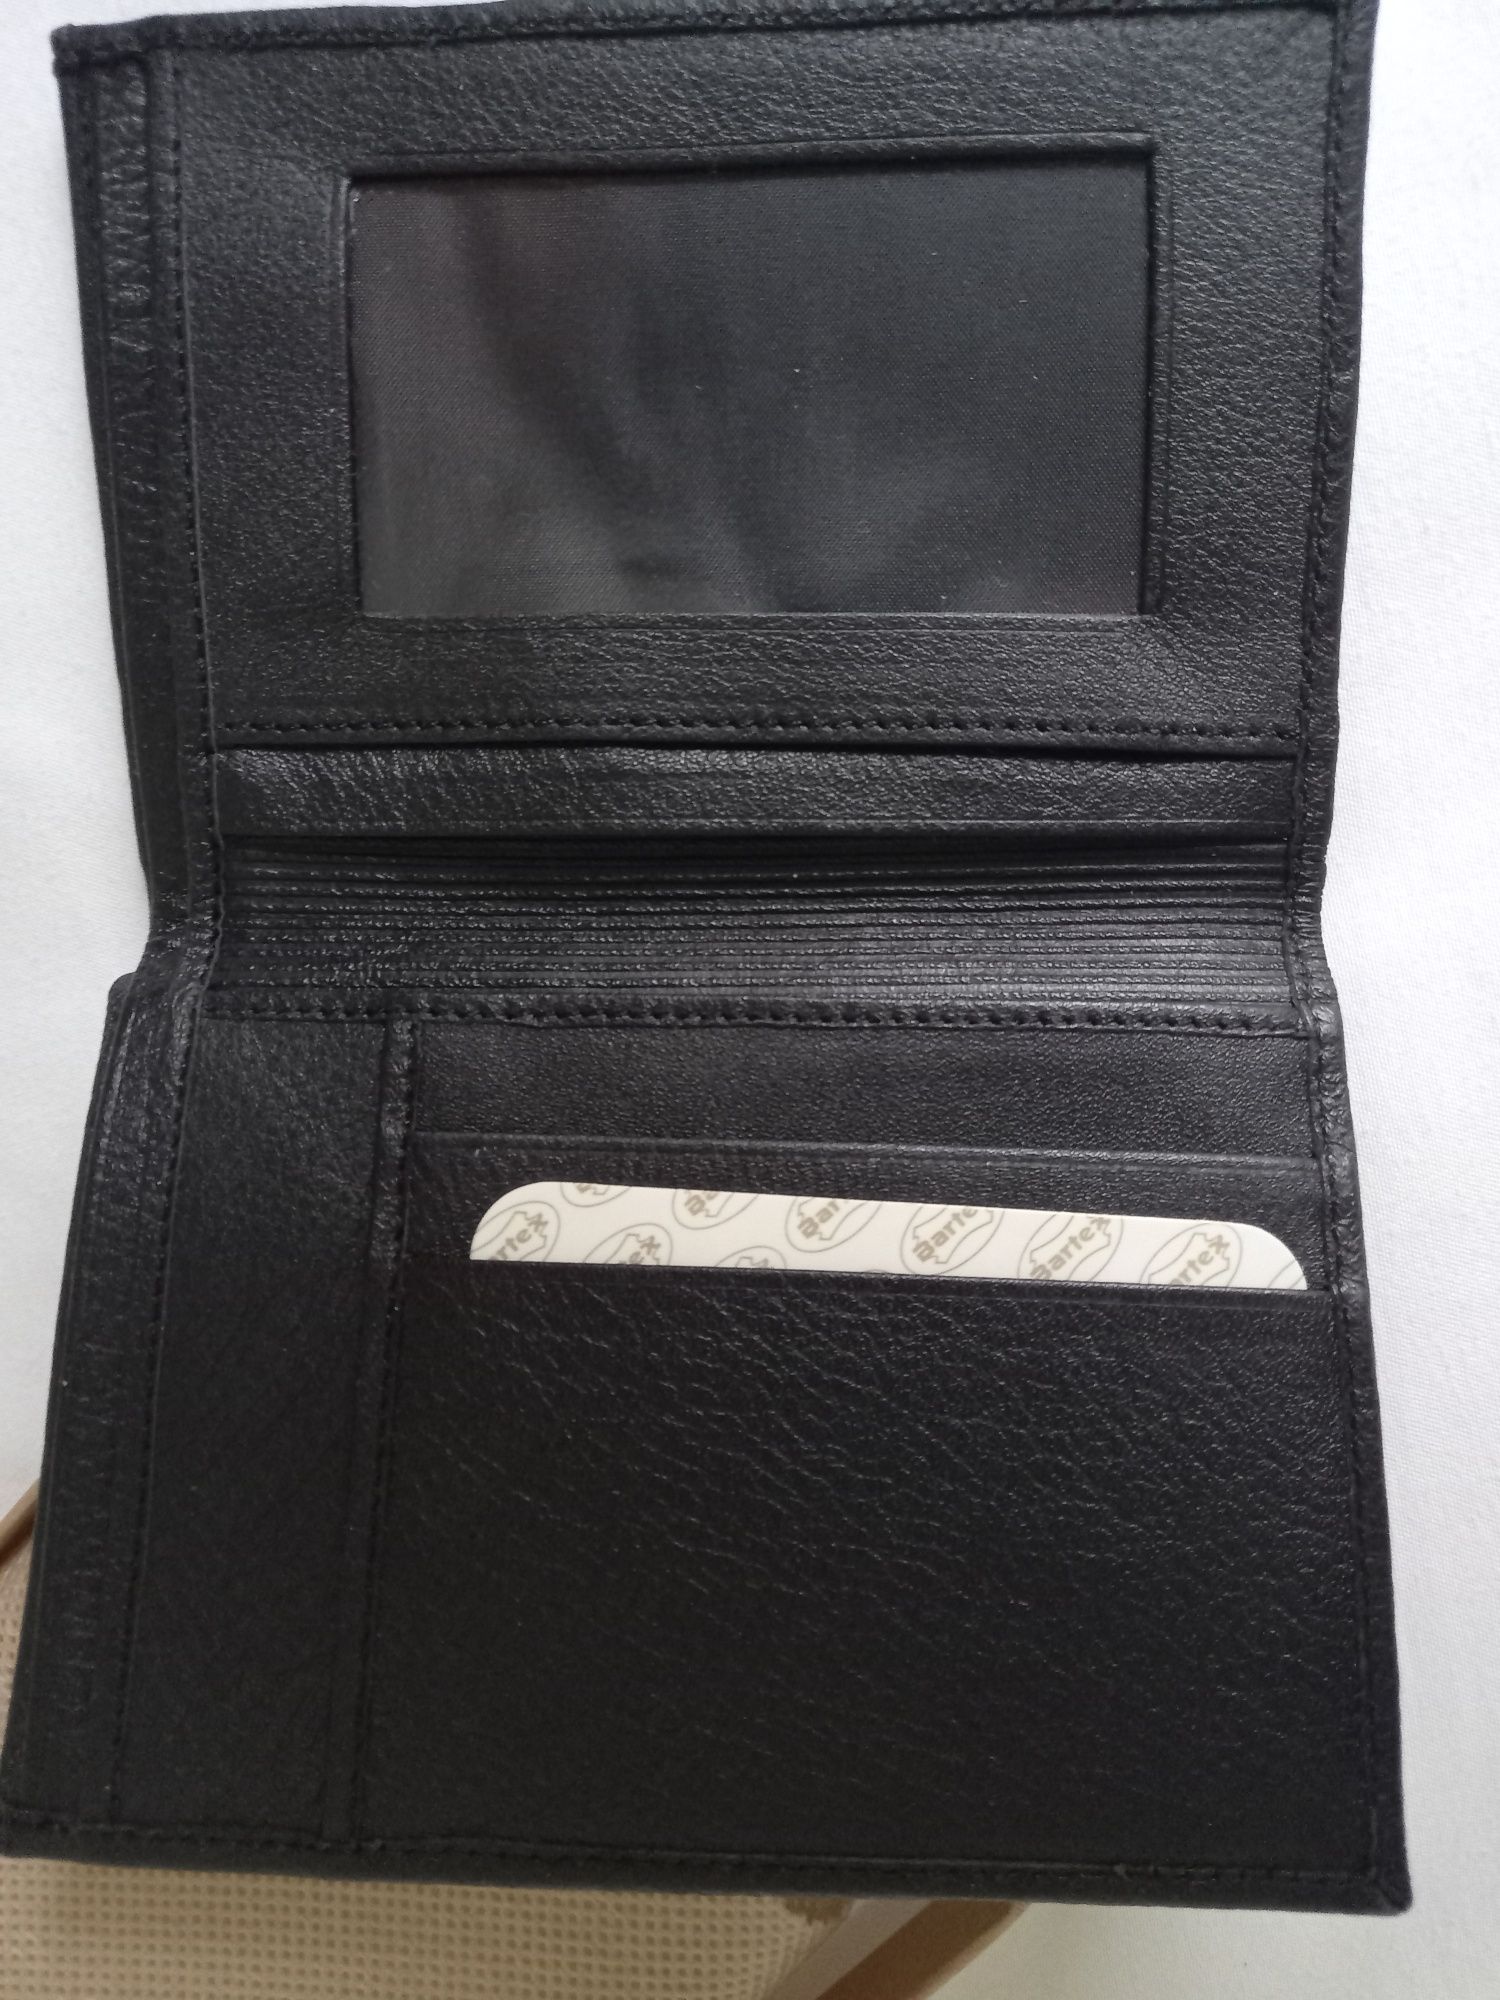 Czarny portfel męski z naturalnej skóry, firma Bartex